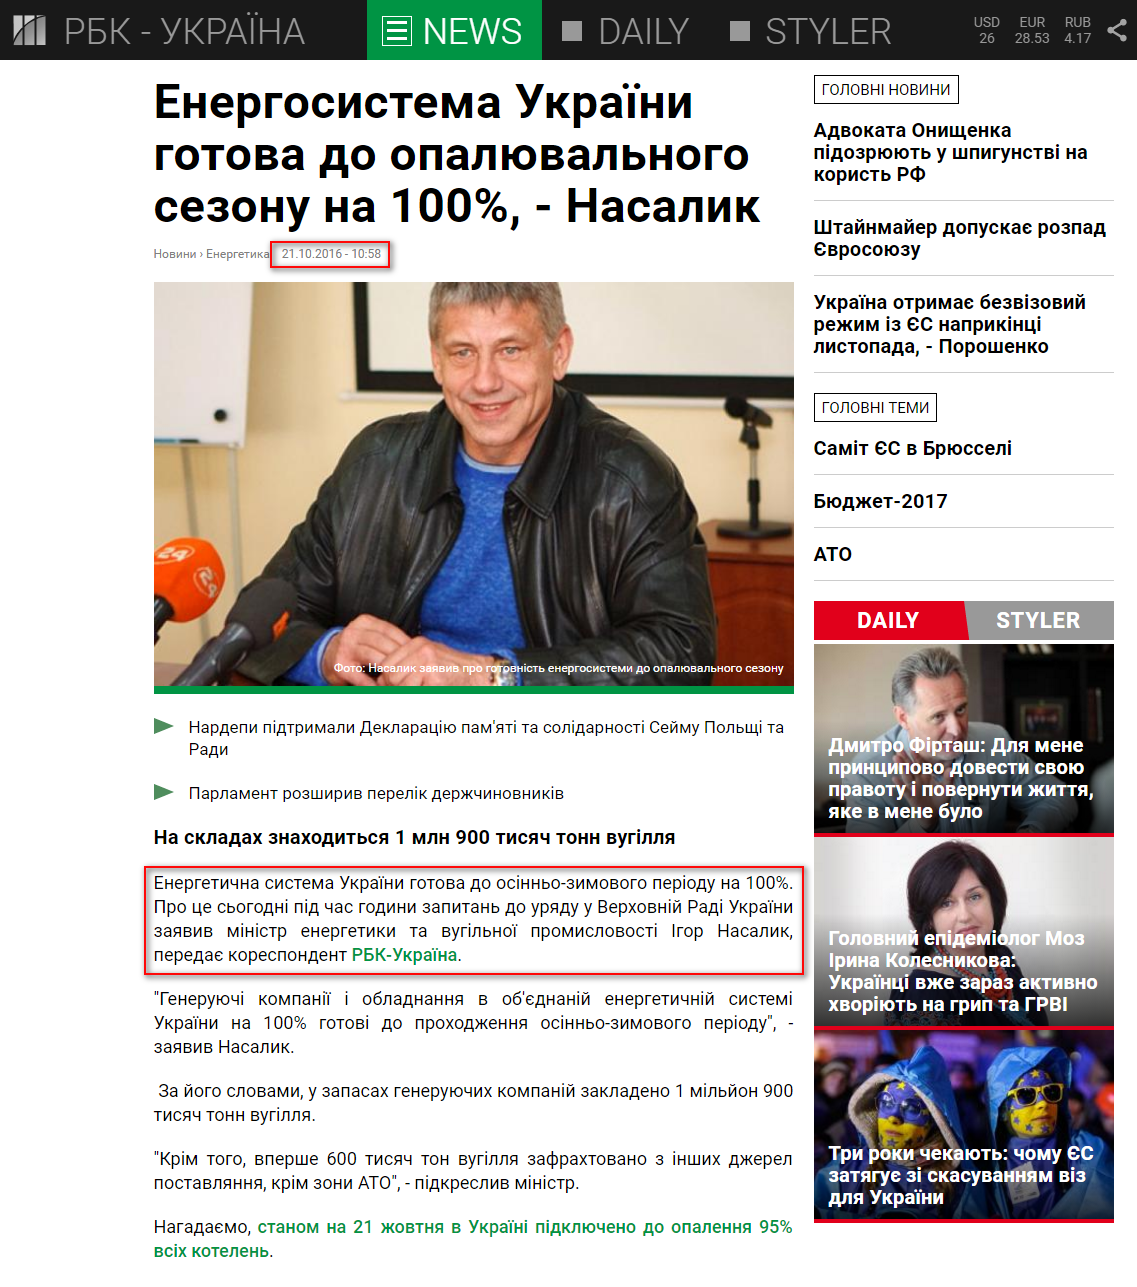 https://www.rbc.ua/ukr/news/energosistema-ukrainy-gotova-otopitelnomu-1477036727.html